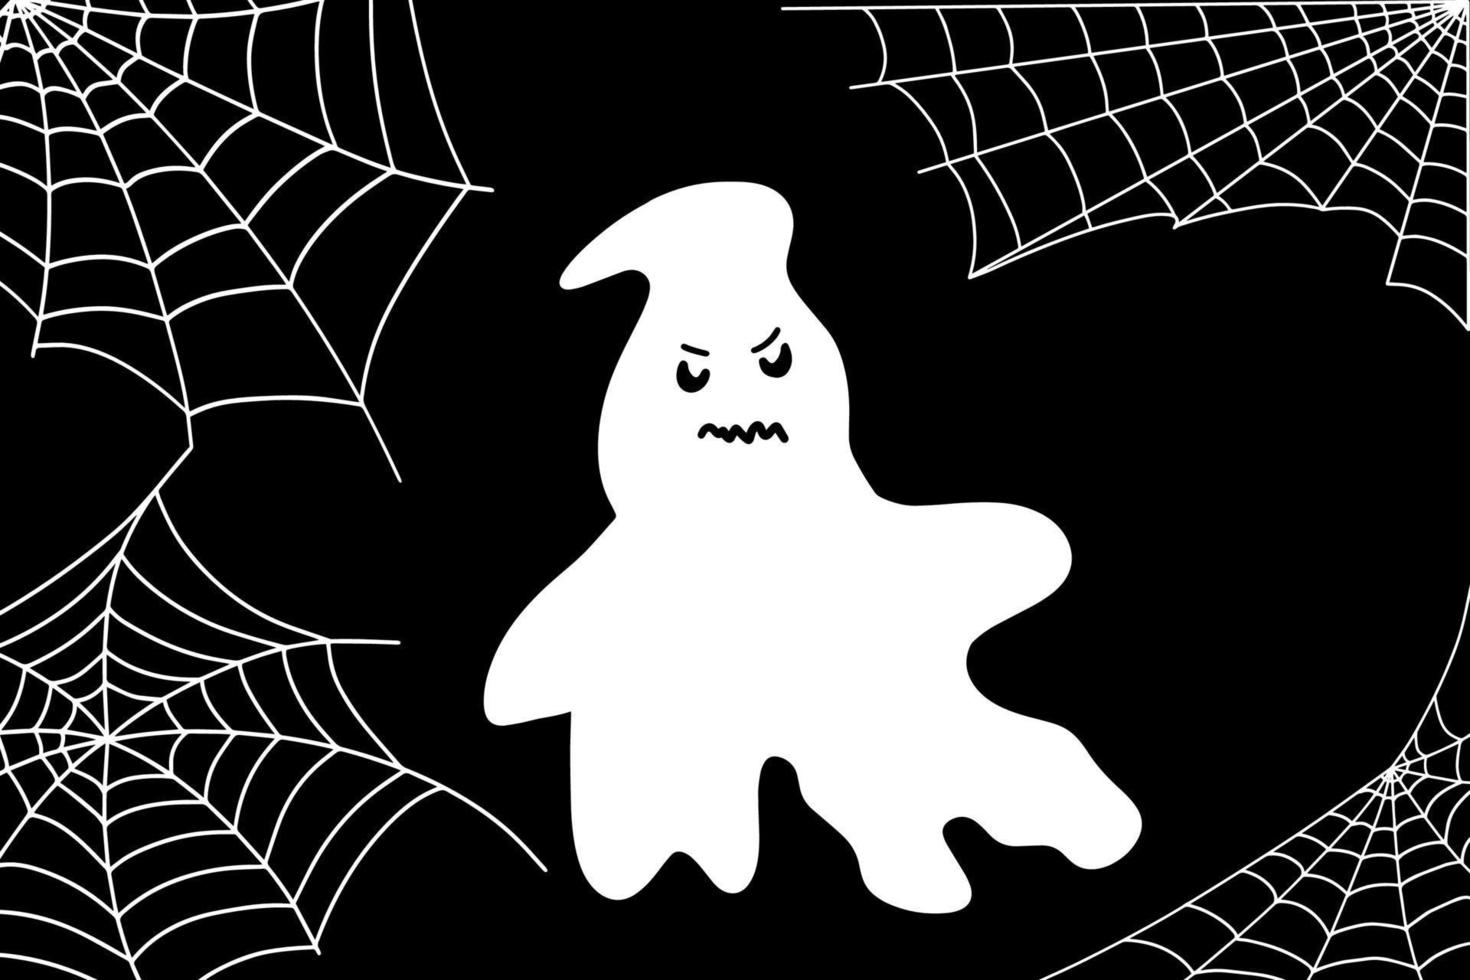 teia de aranha conjunto isolado em fundo escuro. assustadora teia de  halloween. ilustração em vetor elemento festa fantasma branco de halloween.  vetor fantasma com uma cara assustadora. 13184917 Vetor no Vecteezy